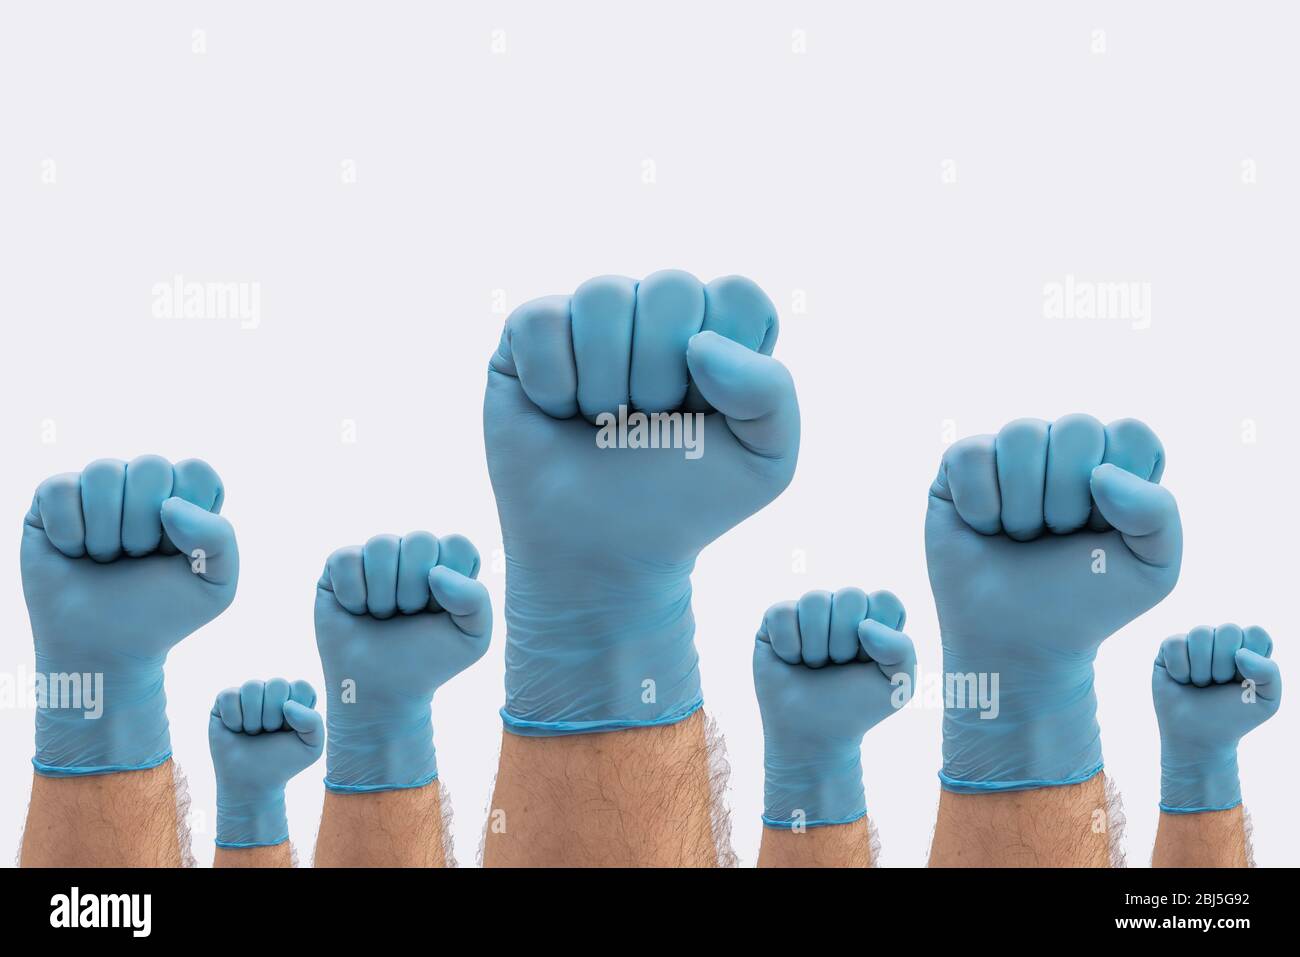 Fists mani in medici blu lattice guanti protettivi come un segno di resistenza alla pandemia - su sfondo bianco stop segno di malattia Foto Stock